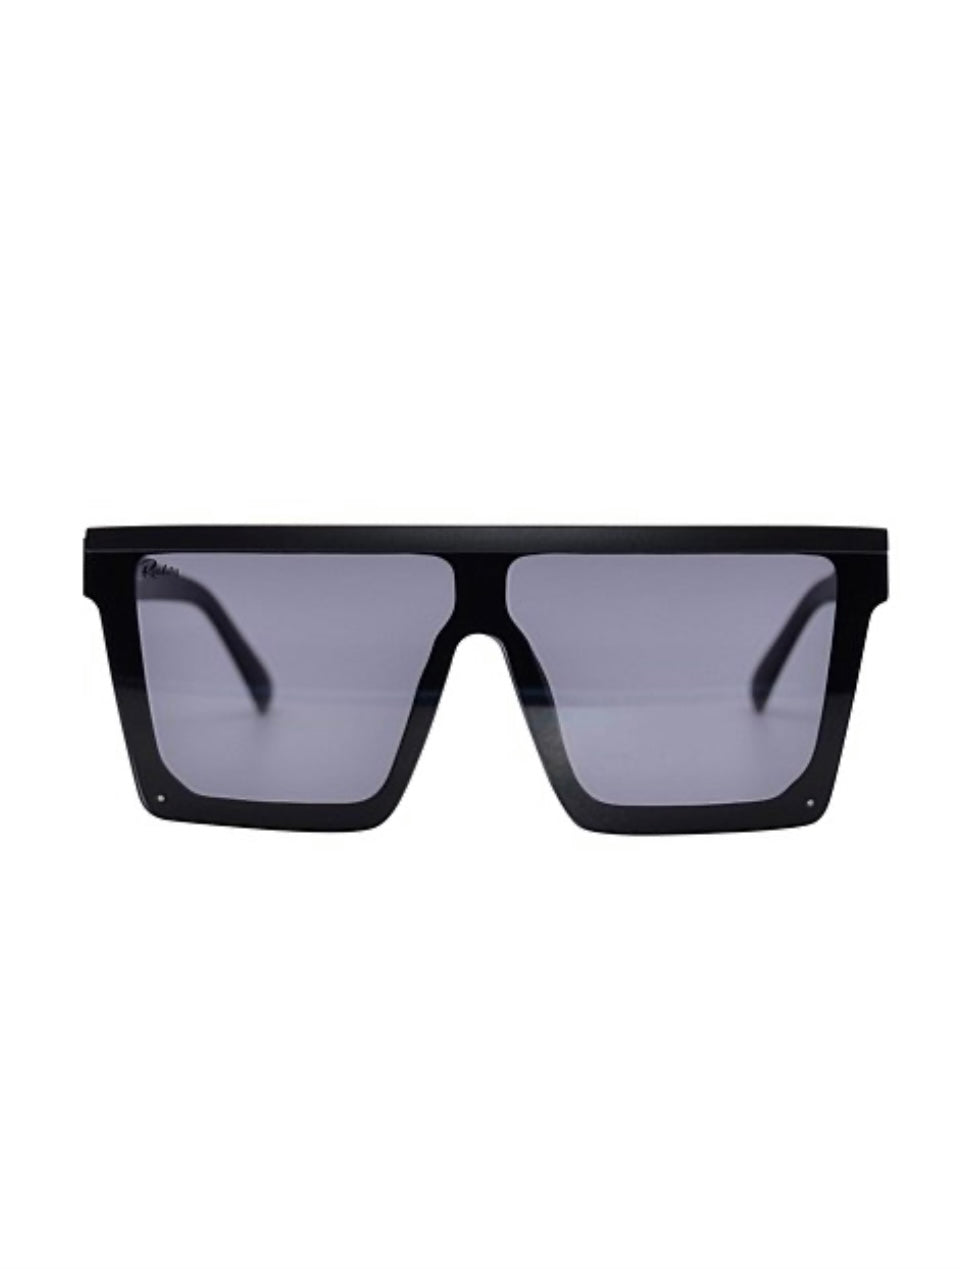 Malibu Reality Sunglasses - Jet Black